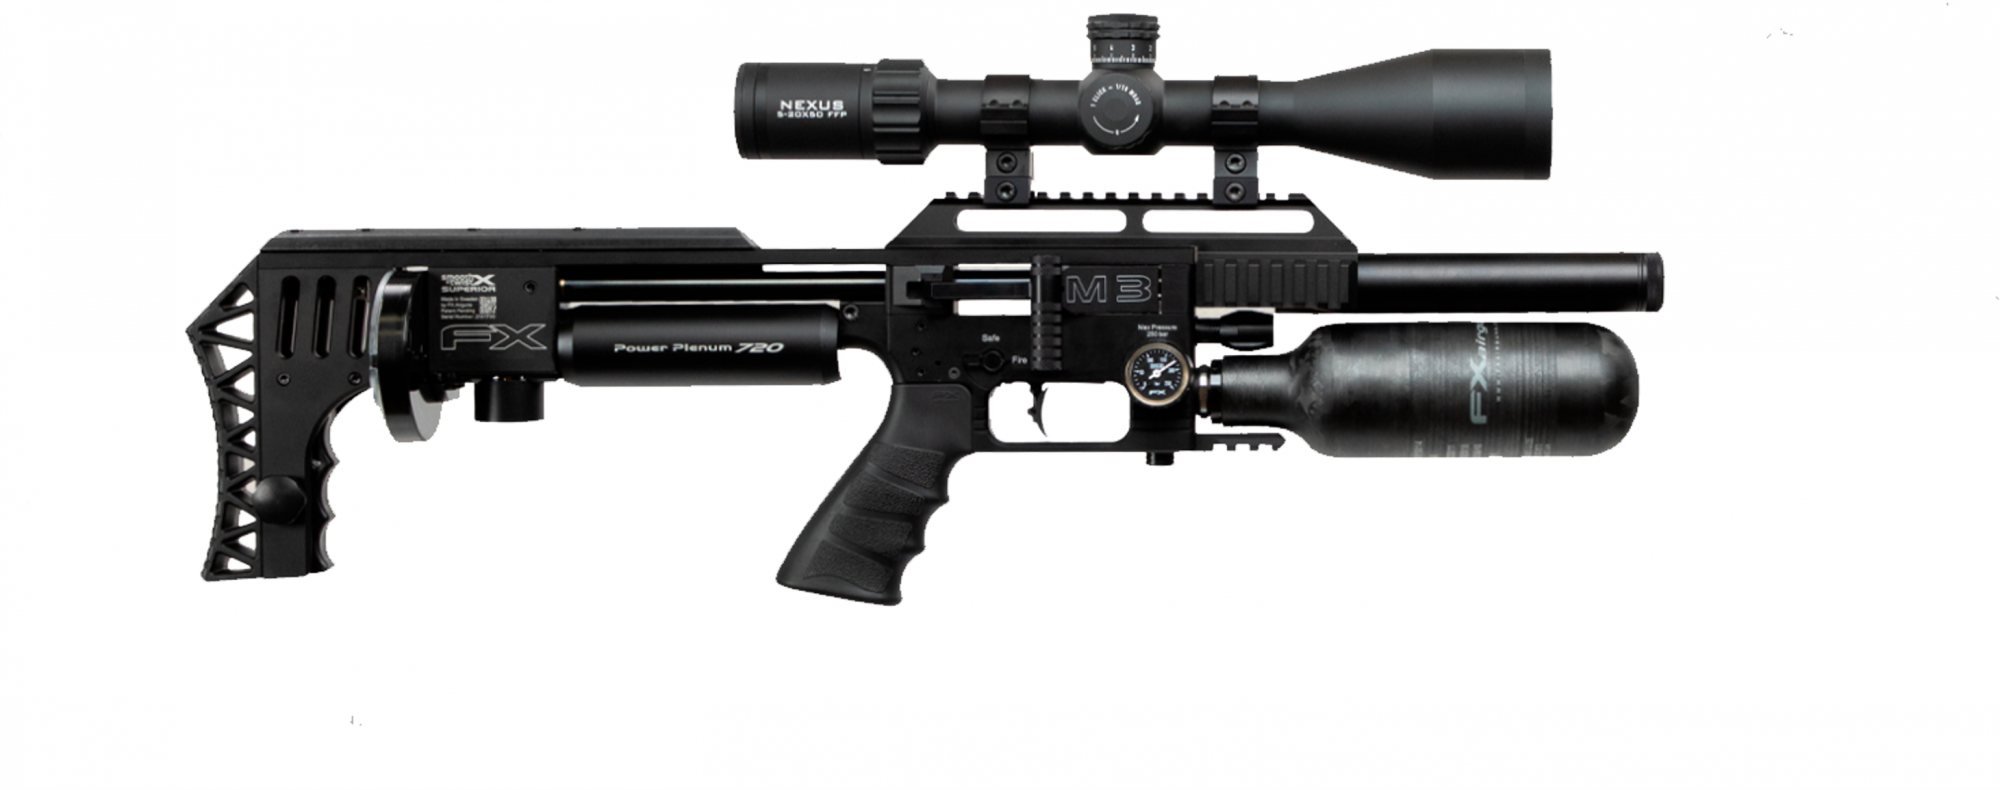 Fx Airguns Fx Impact M3 Black Compact Pcp Air Rifle Rifleman Firearms 4382